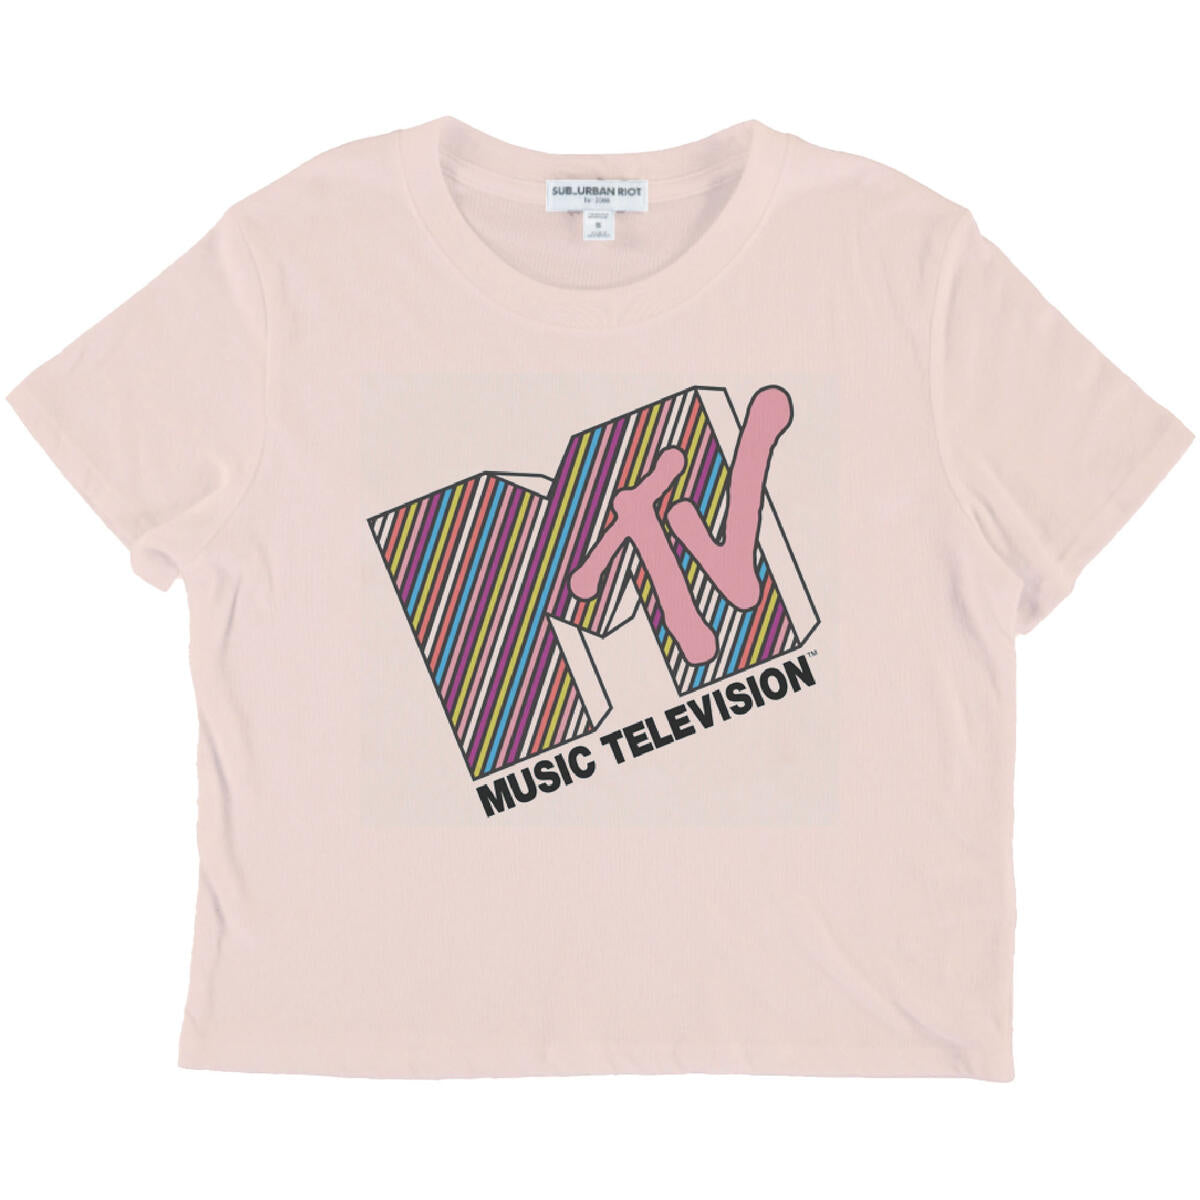 Girls "MTV" Graphic Tee Shirt